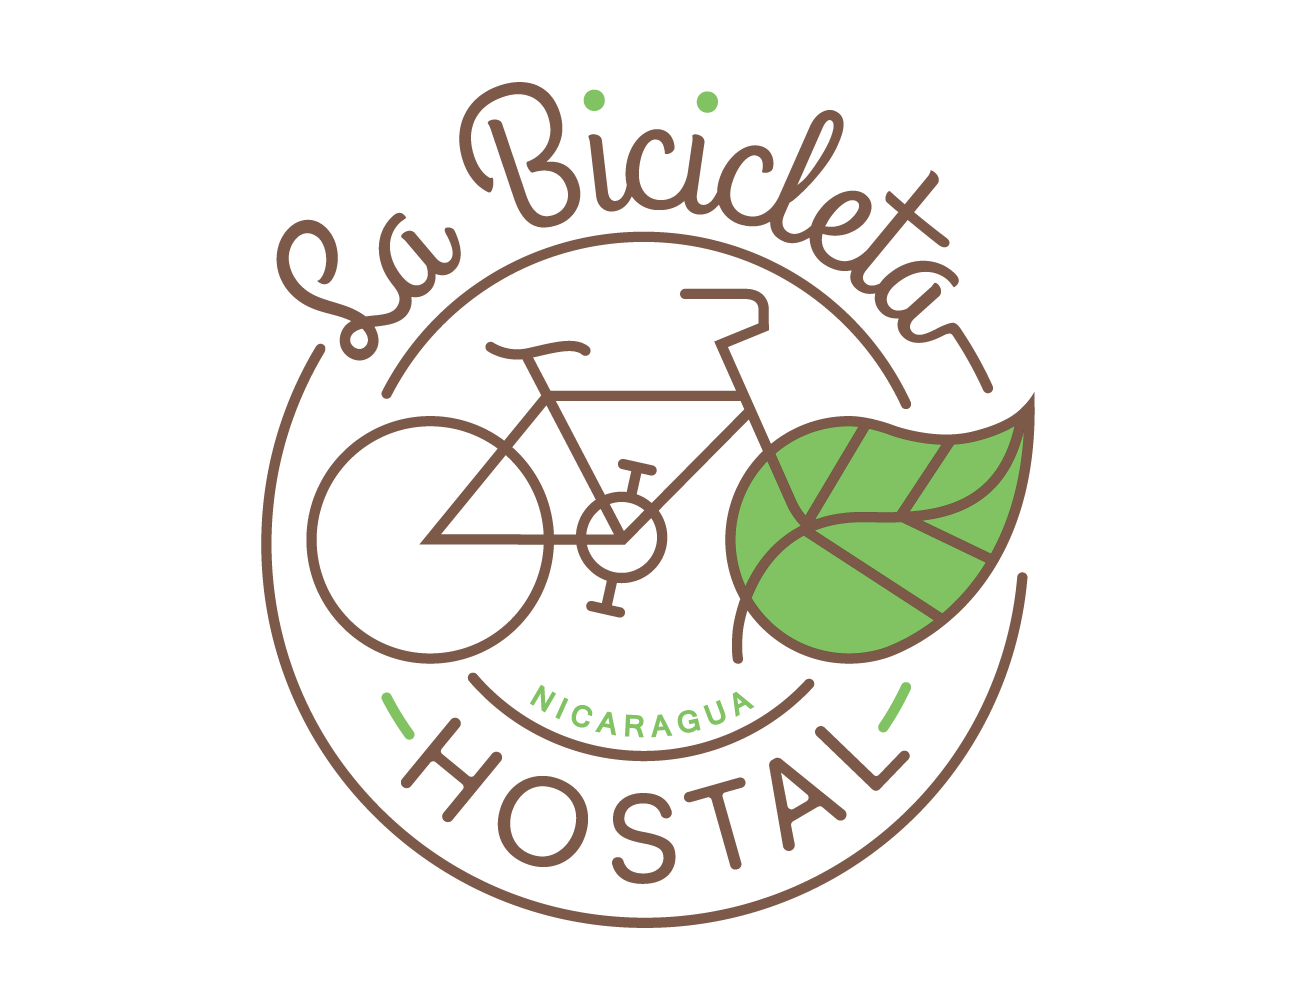 La_Bicicleta_Hostal